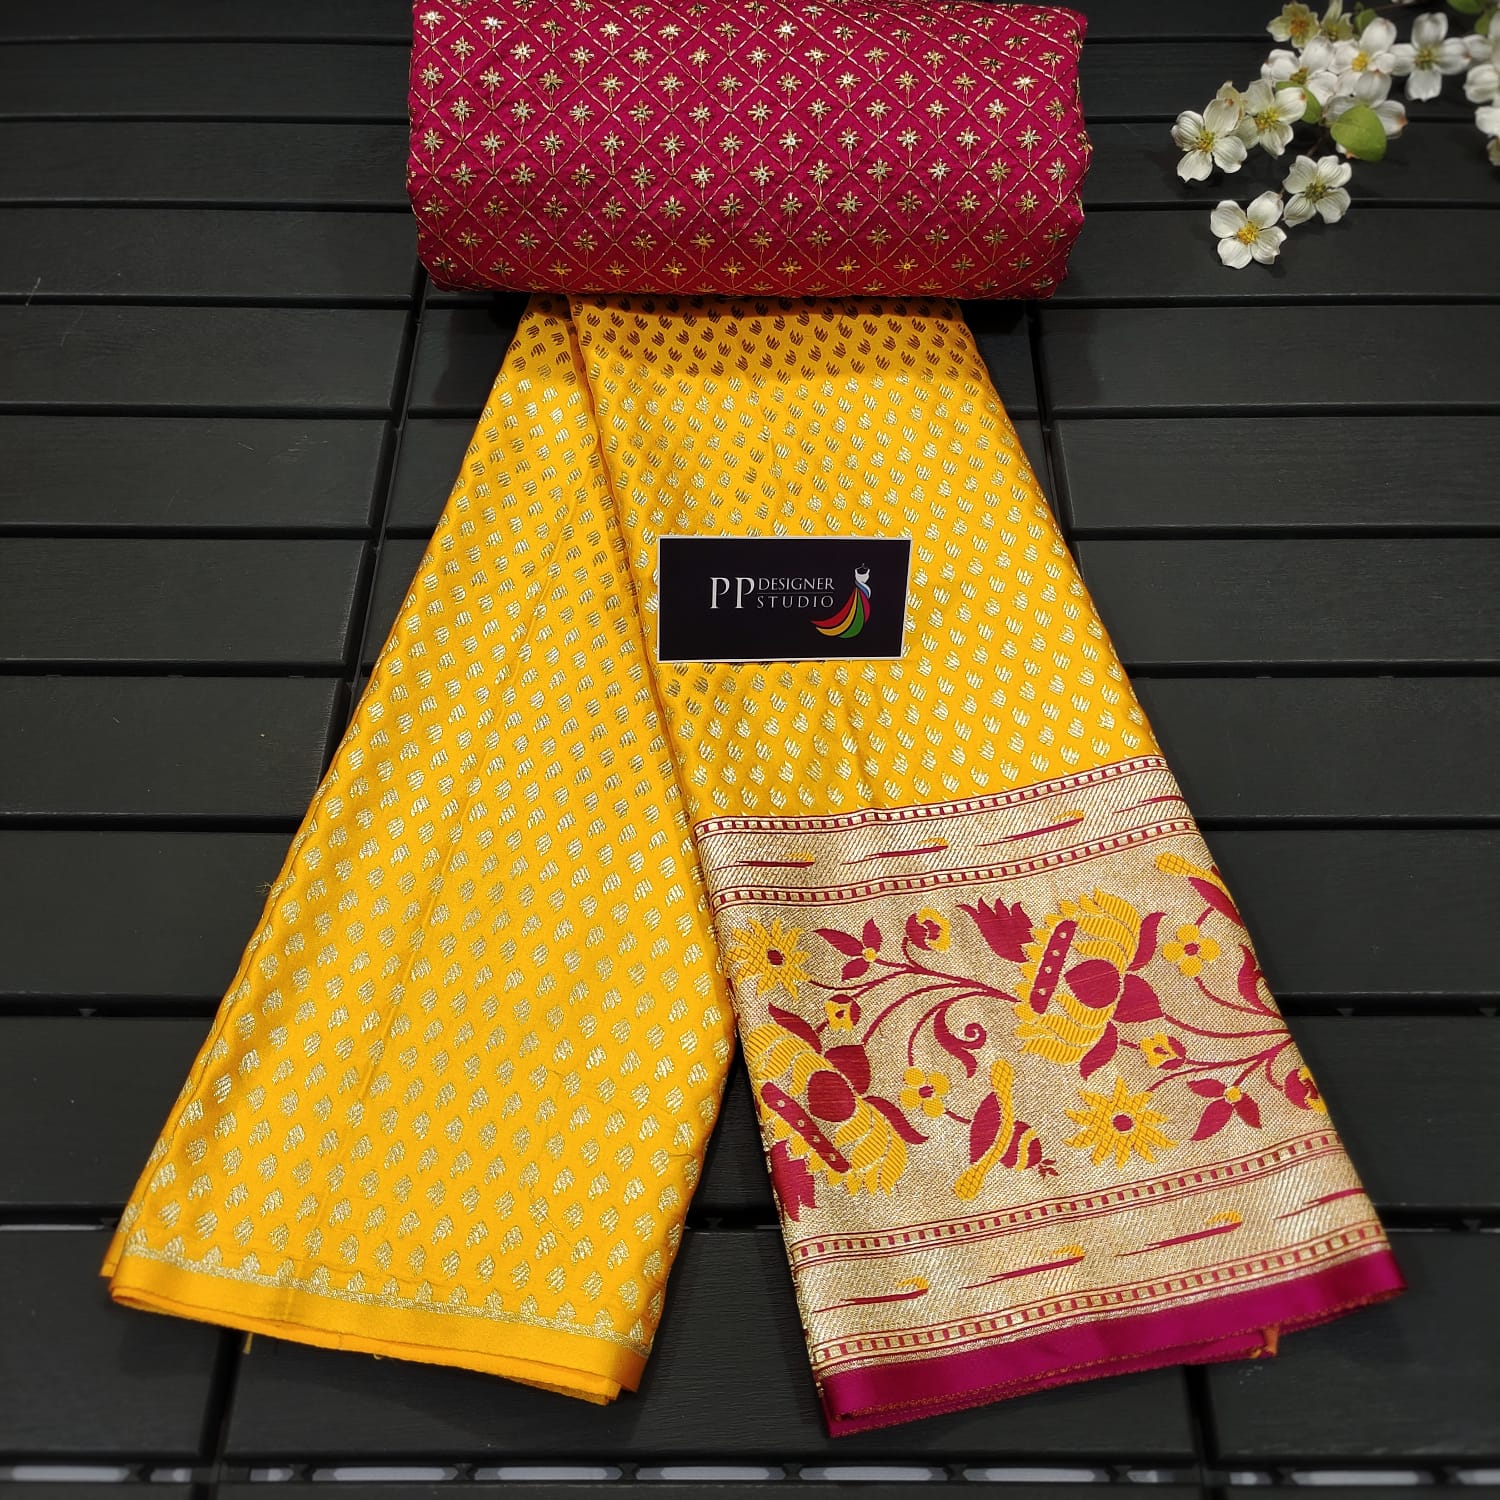 Banarasi Lehenga Dress Material, for Garments Making, Packaging Size : 5  Pieces Set at Rs 50 / Meter in Surat